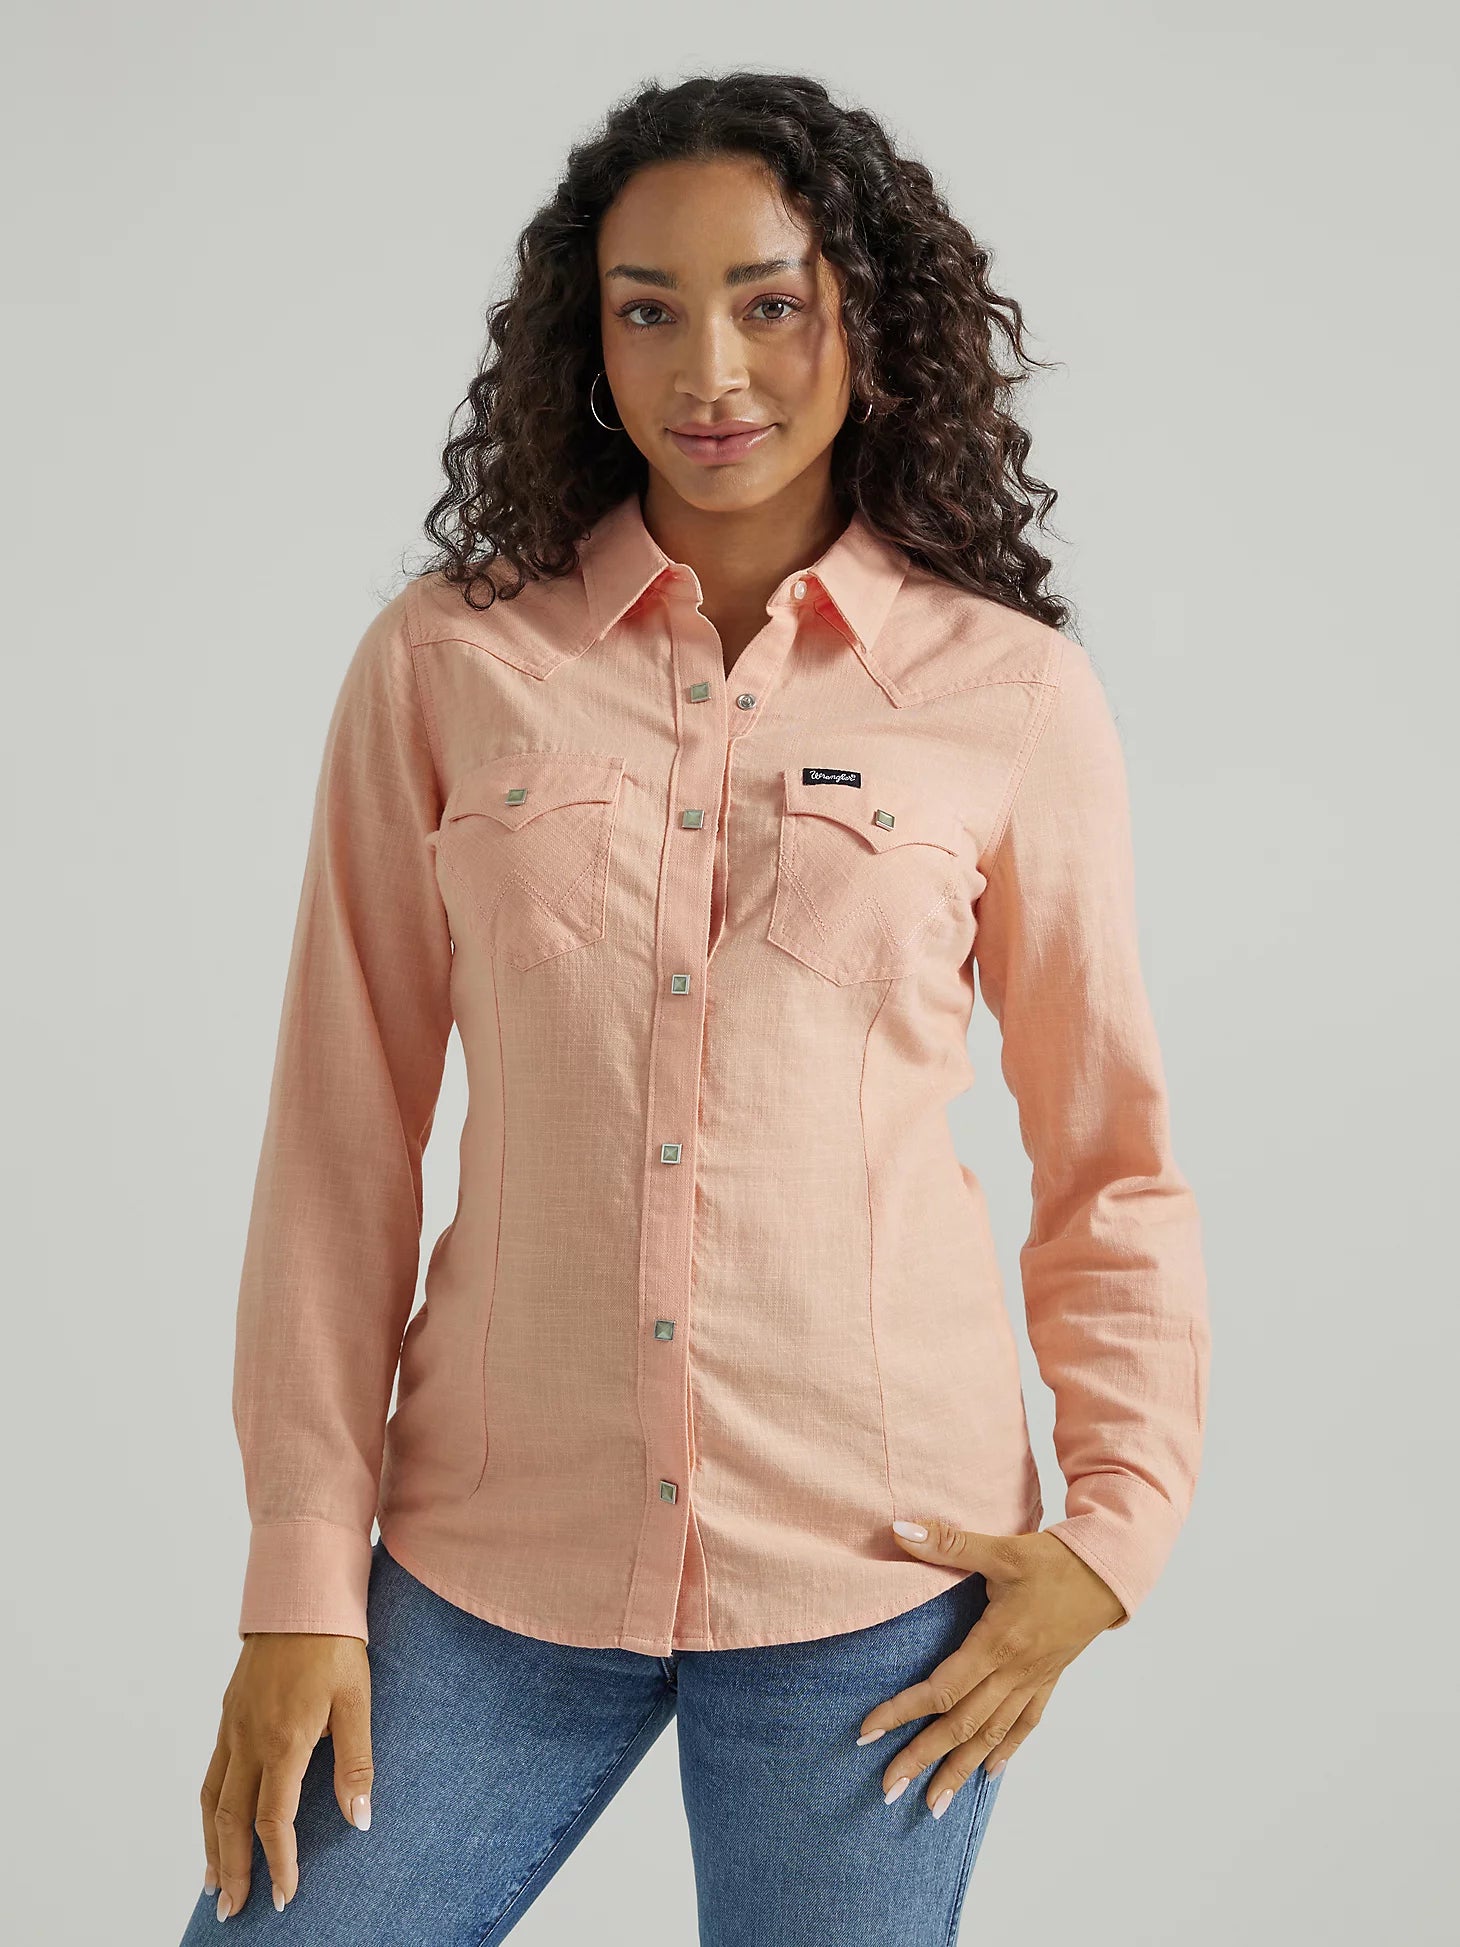 Wrangler Women's Long Sleeve Shirt STYLE 112347182